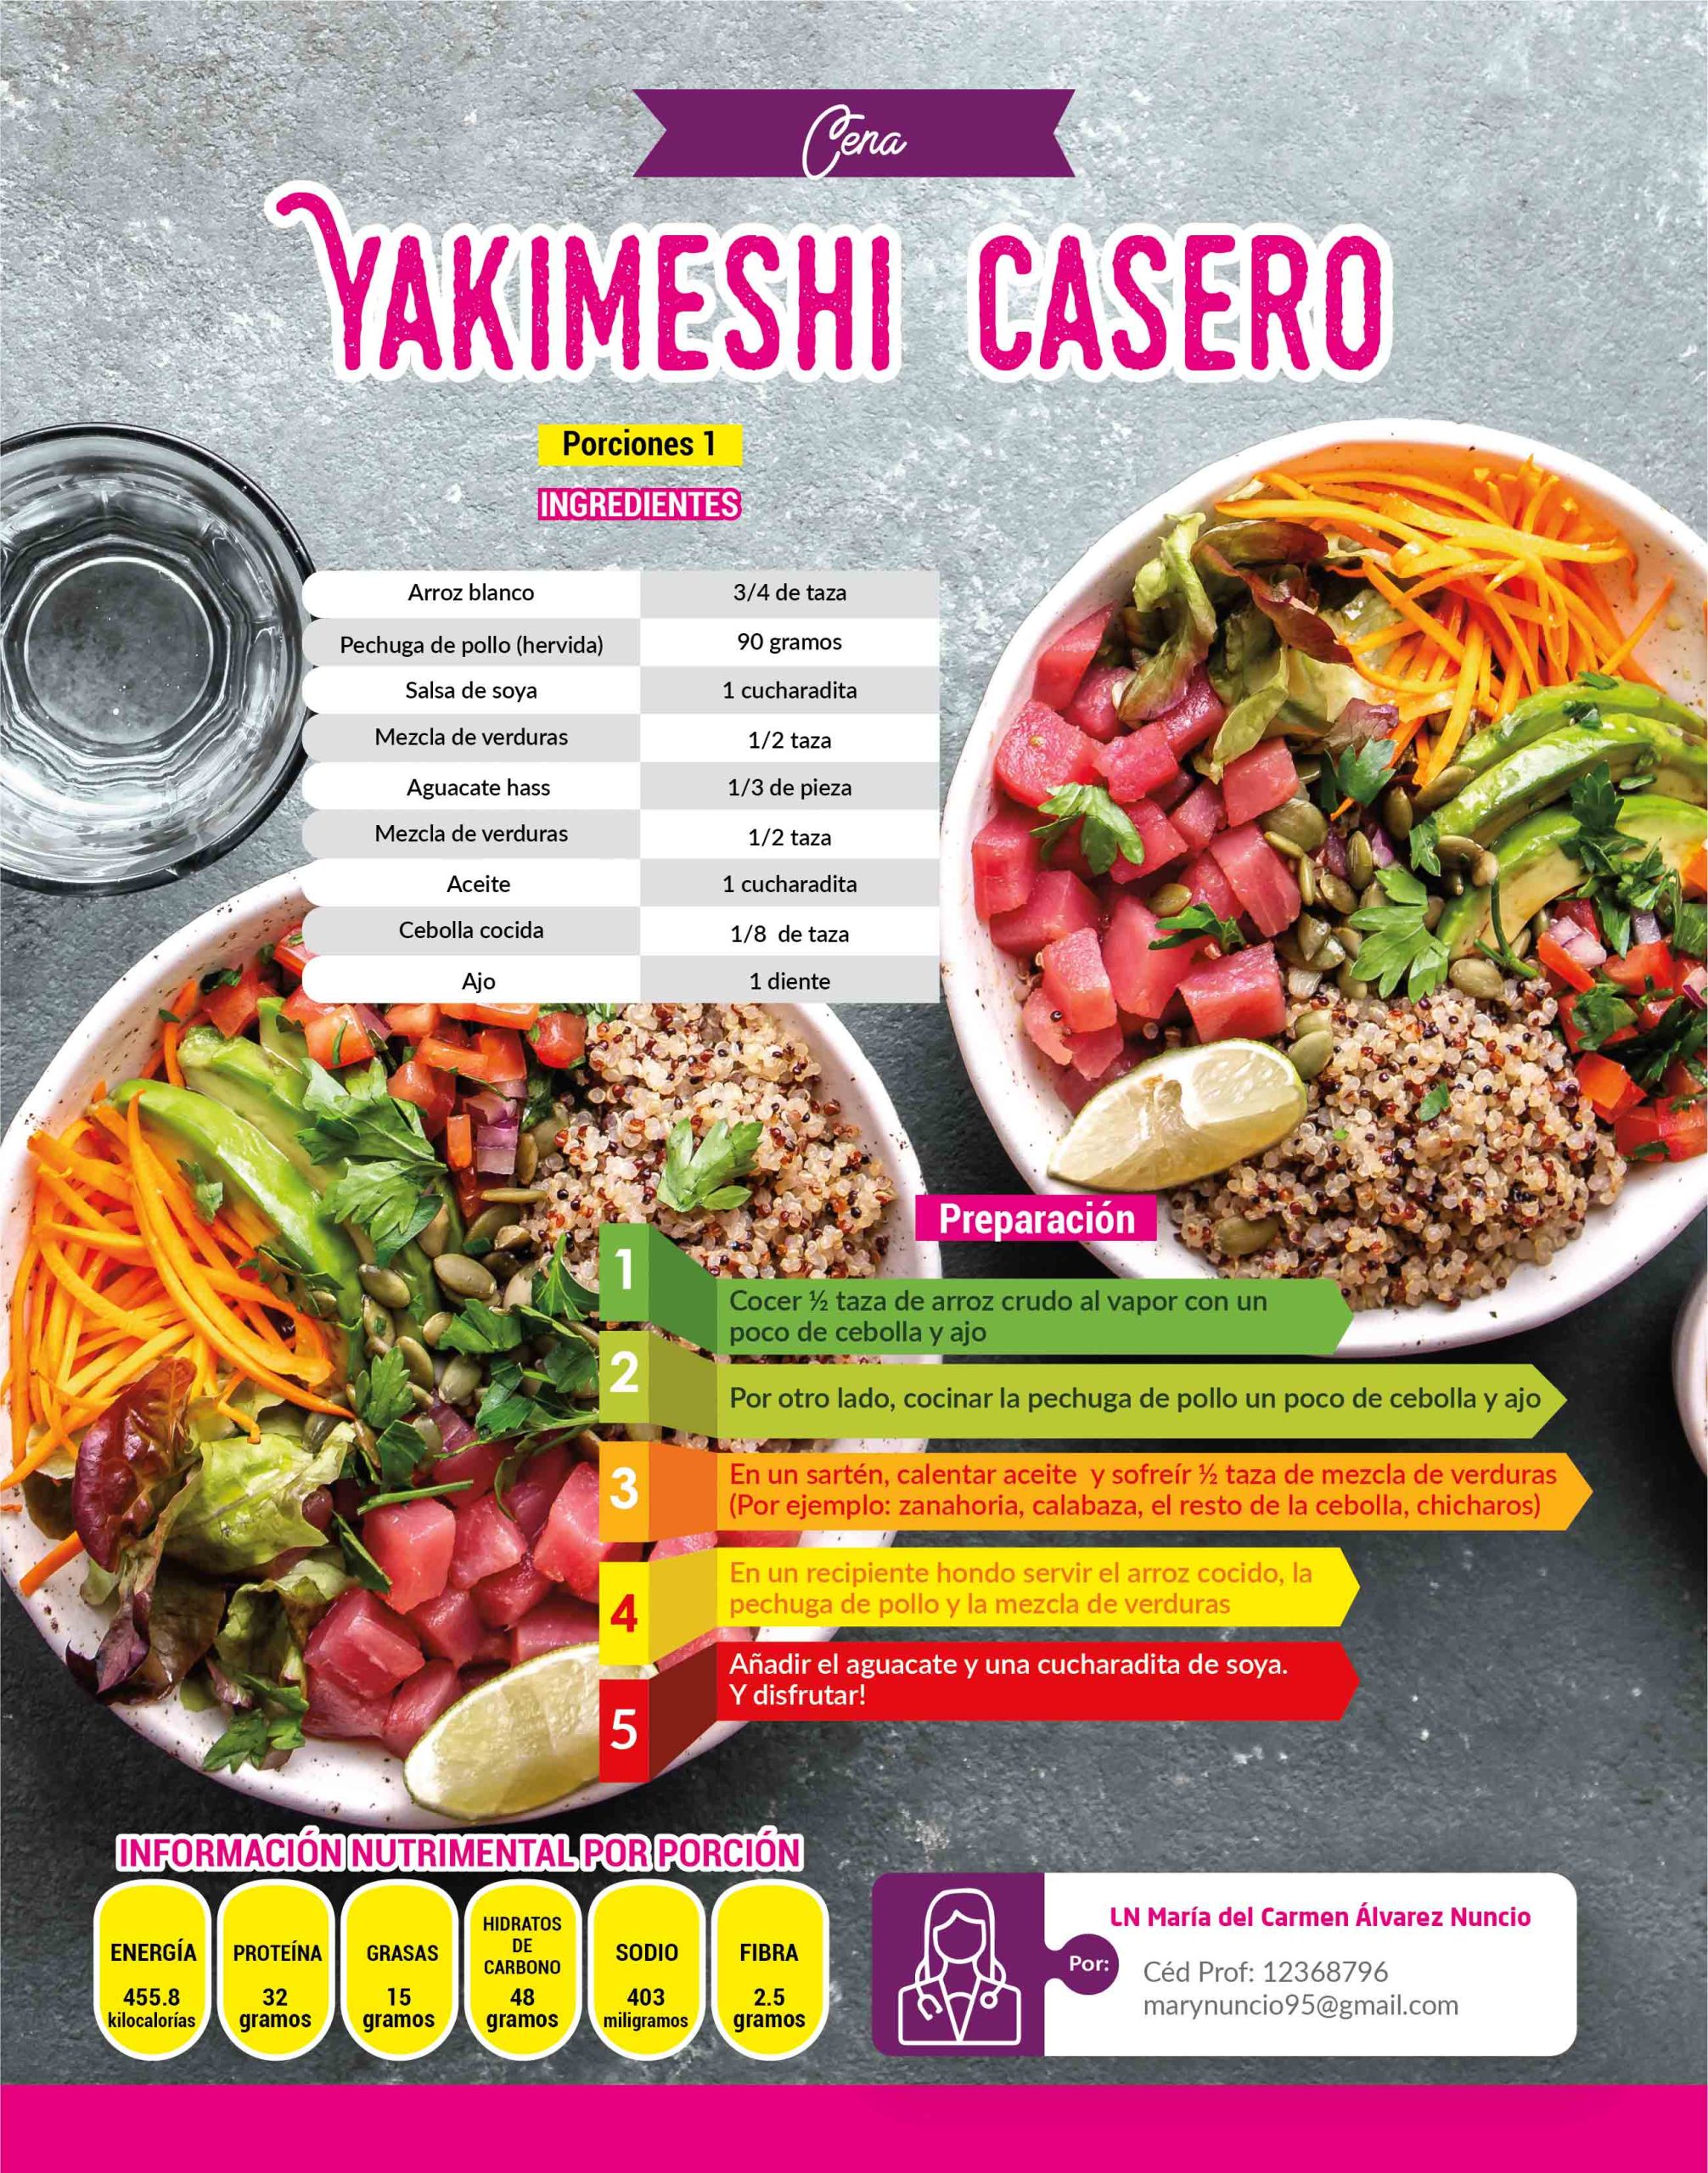 Deliciosa receta de Yakimeshi casero